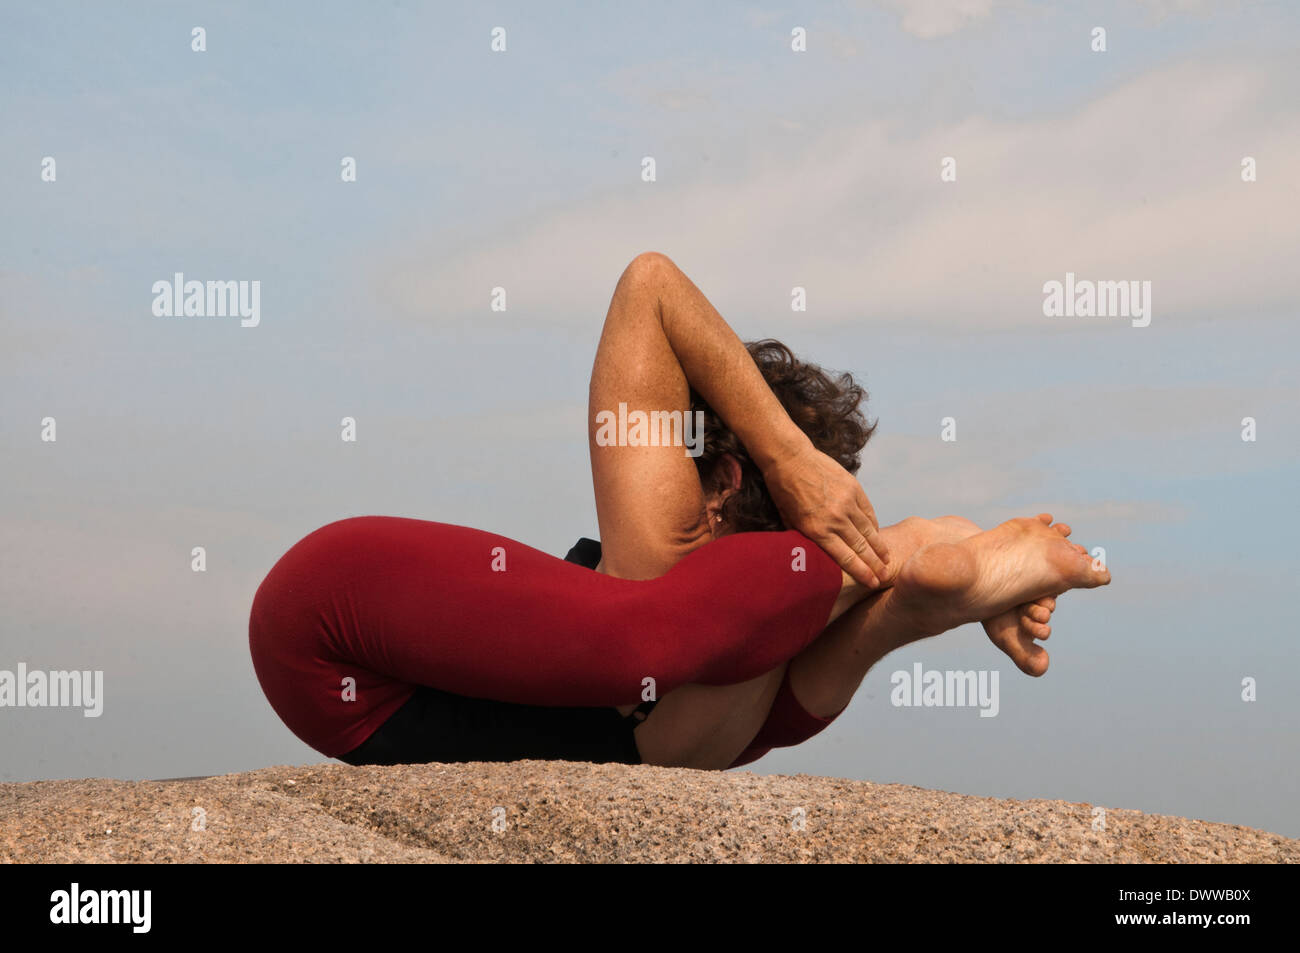 Posición De Sueño En El Yoga Y Beneficios | Yoga